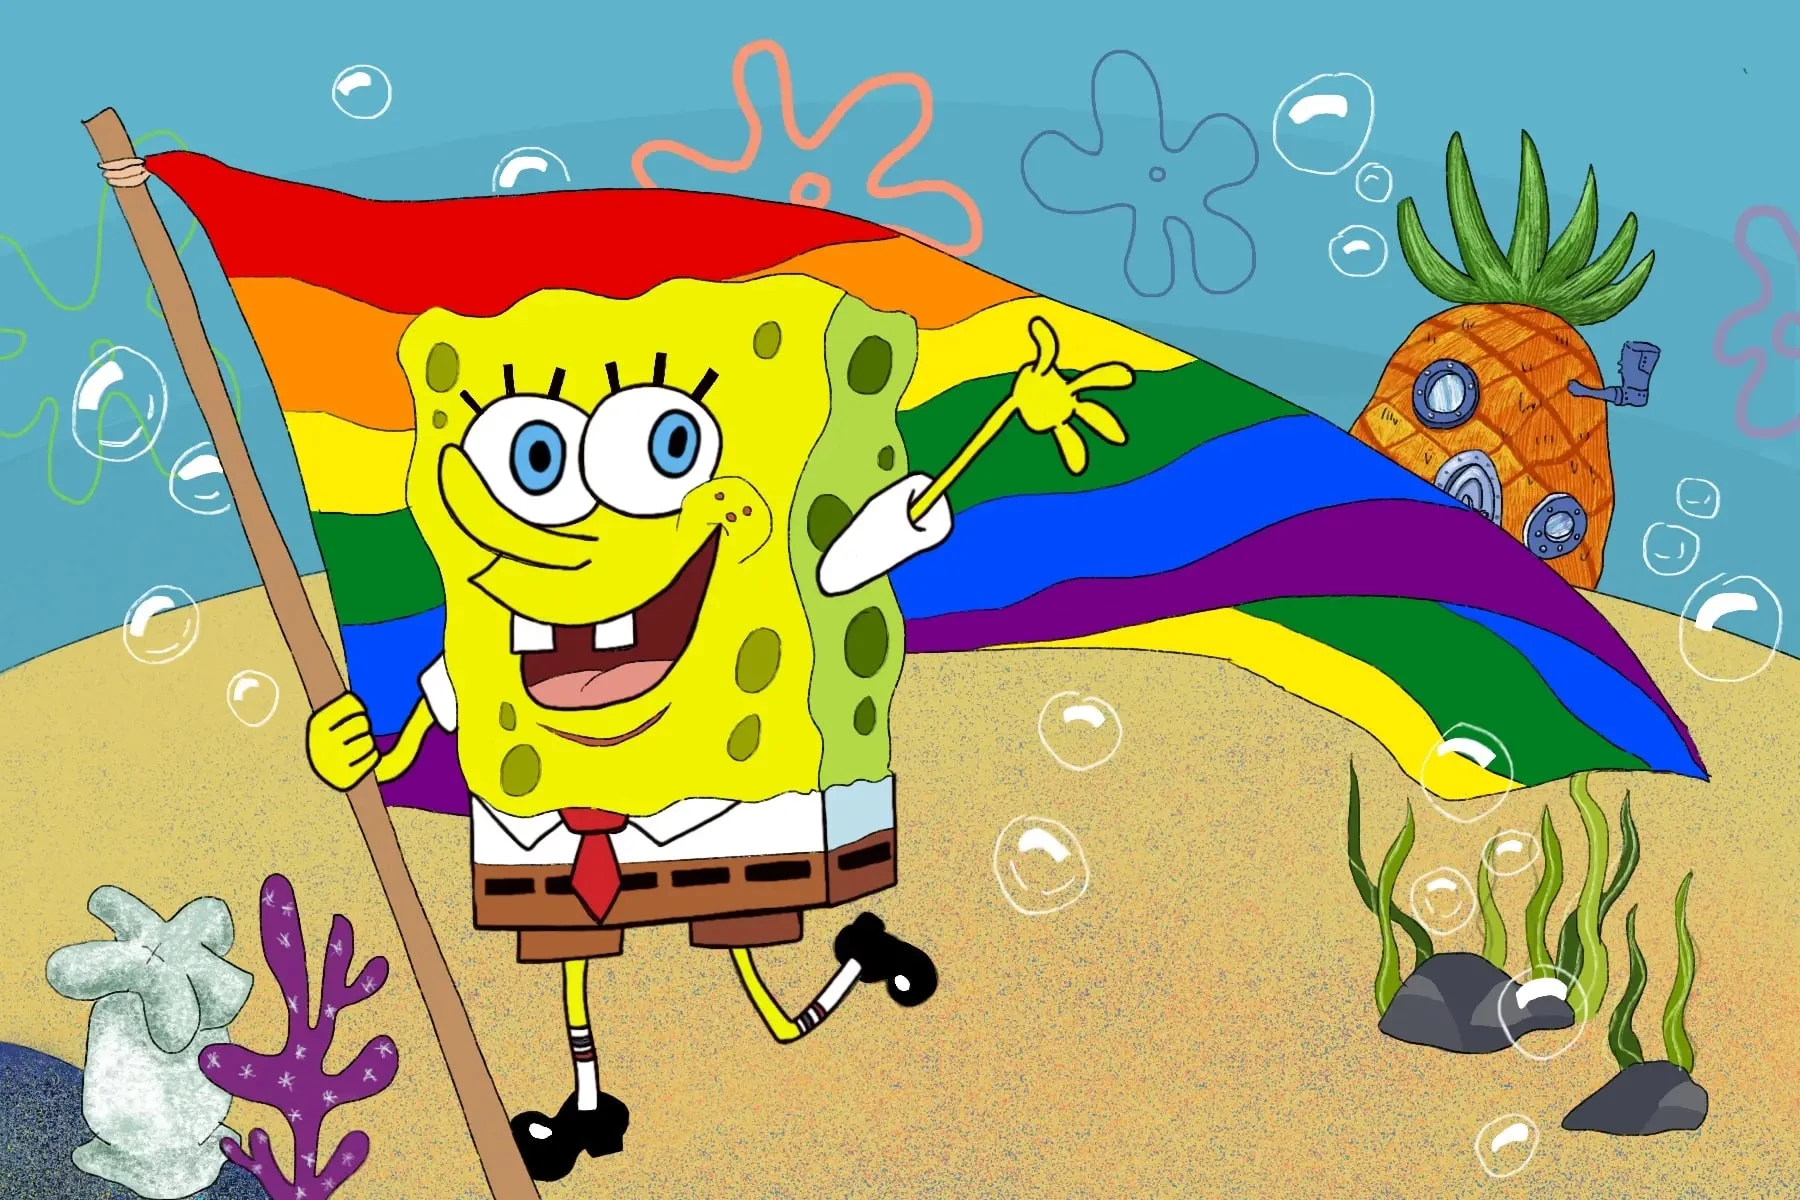 Is Spongebob Gay?